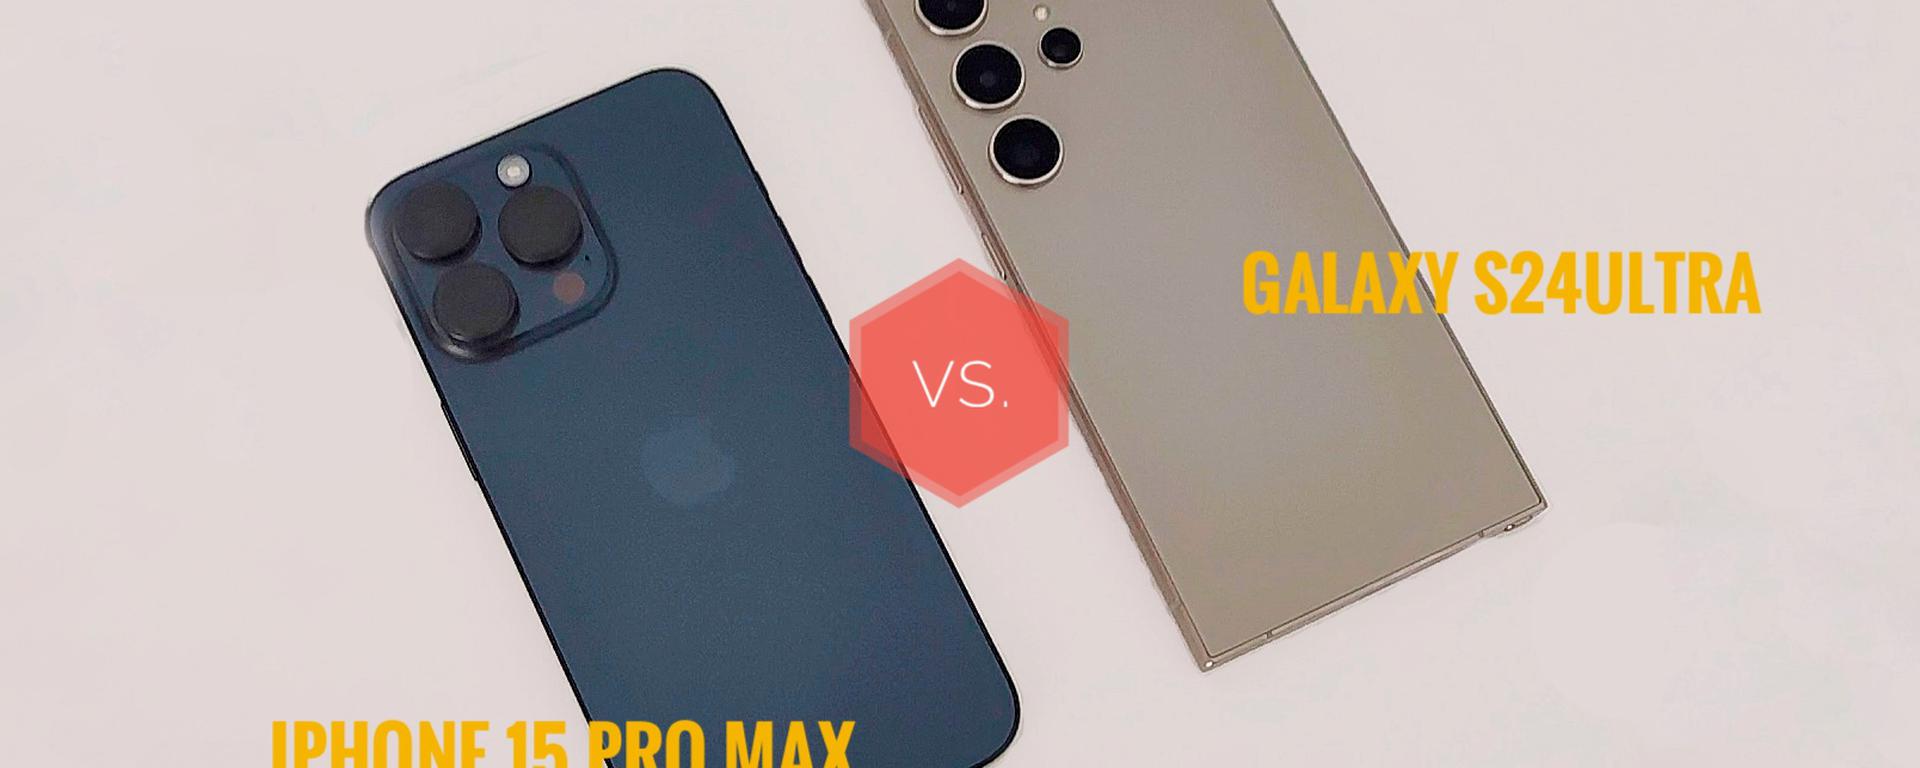 Samsung Galaxy S24 Ultra vs. iPhone 15 Pro Max: ¿qué celular tiene mejores cámaras?